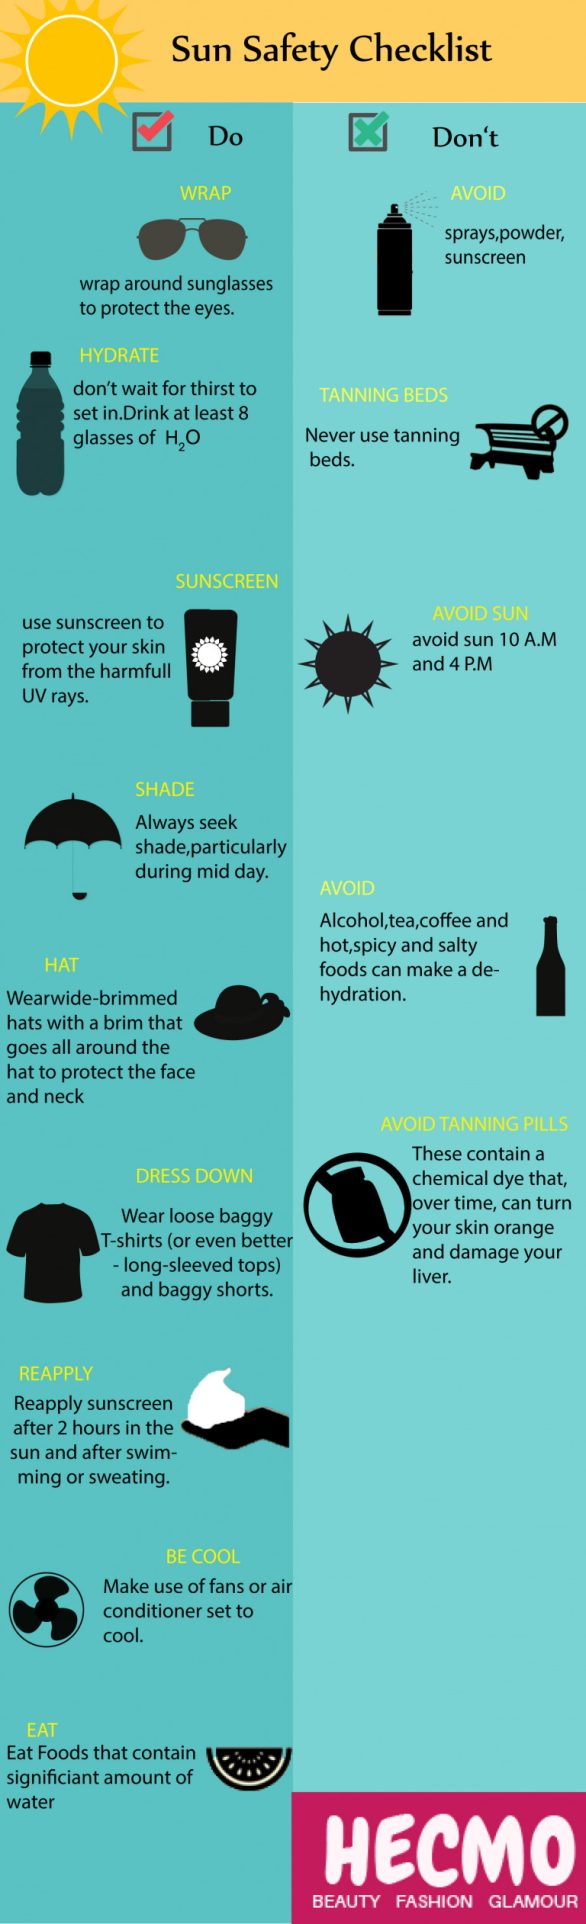 Sun Safety Checklist